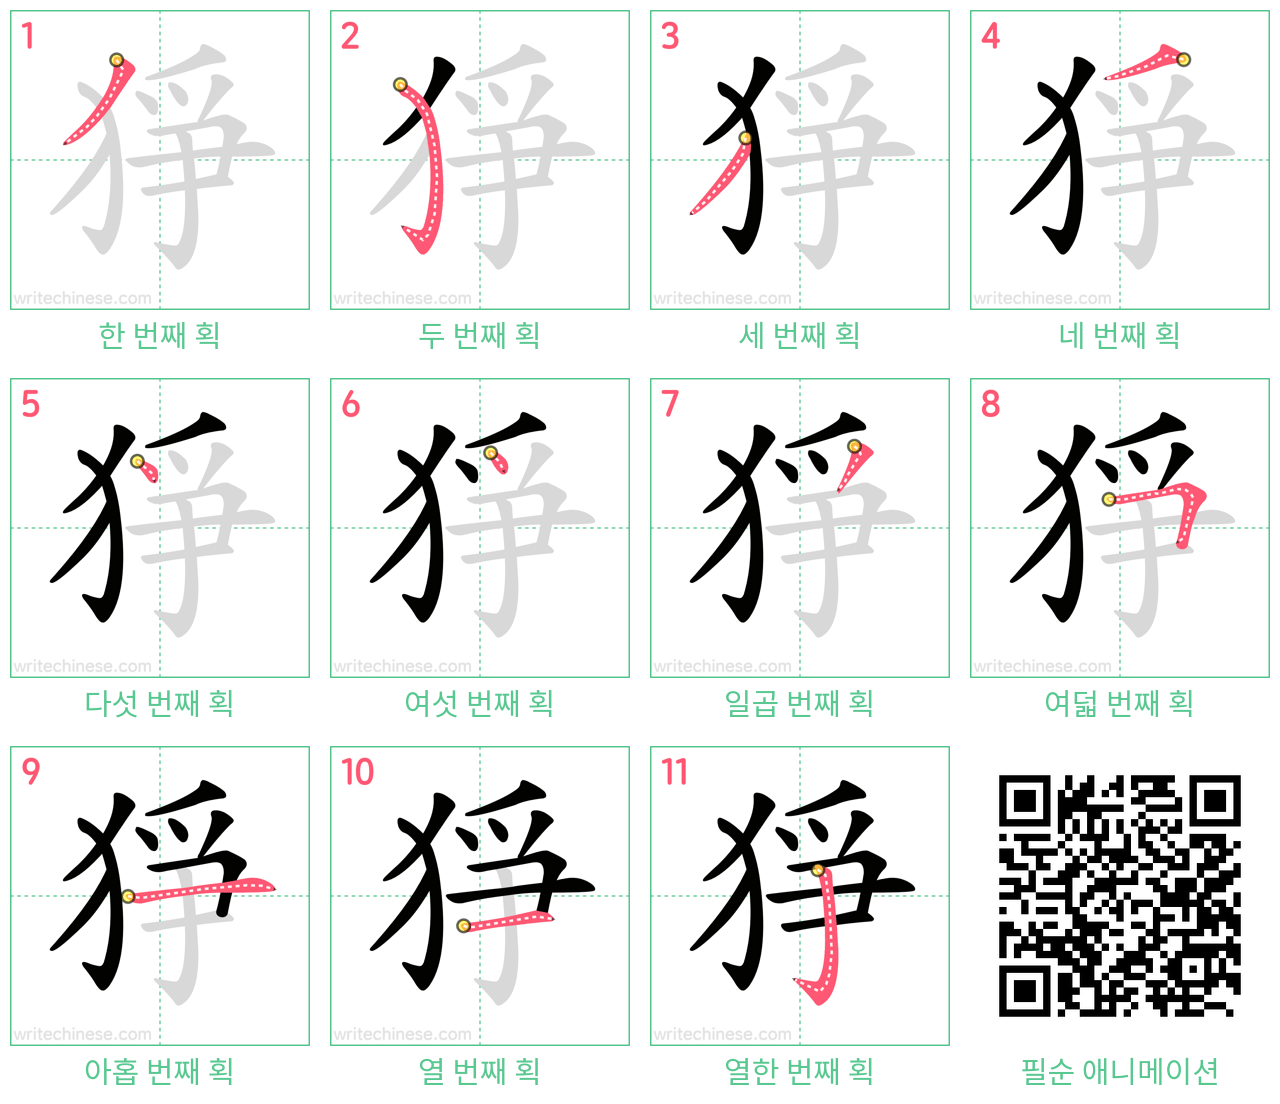 猙 step-by-step stroke order diagrams